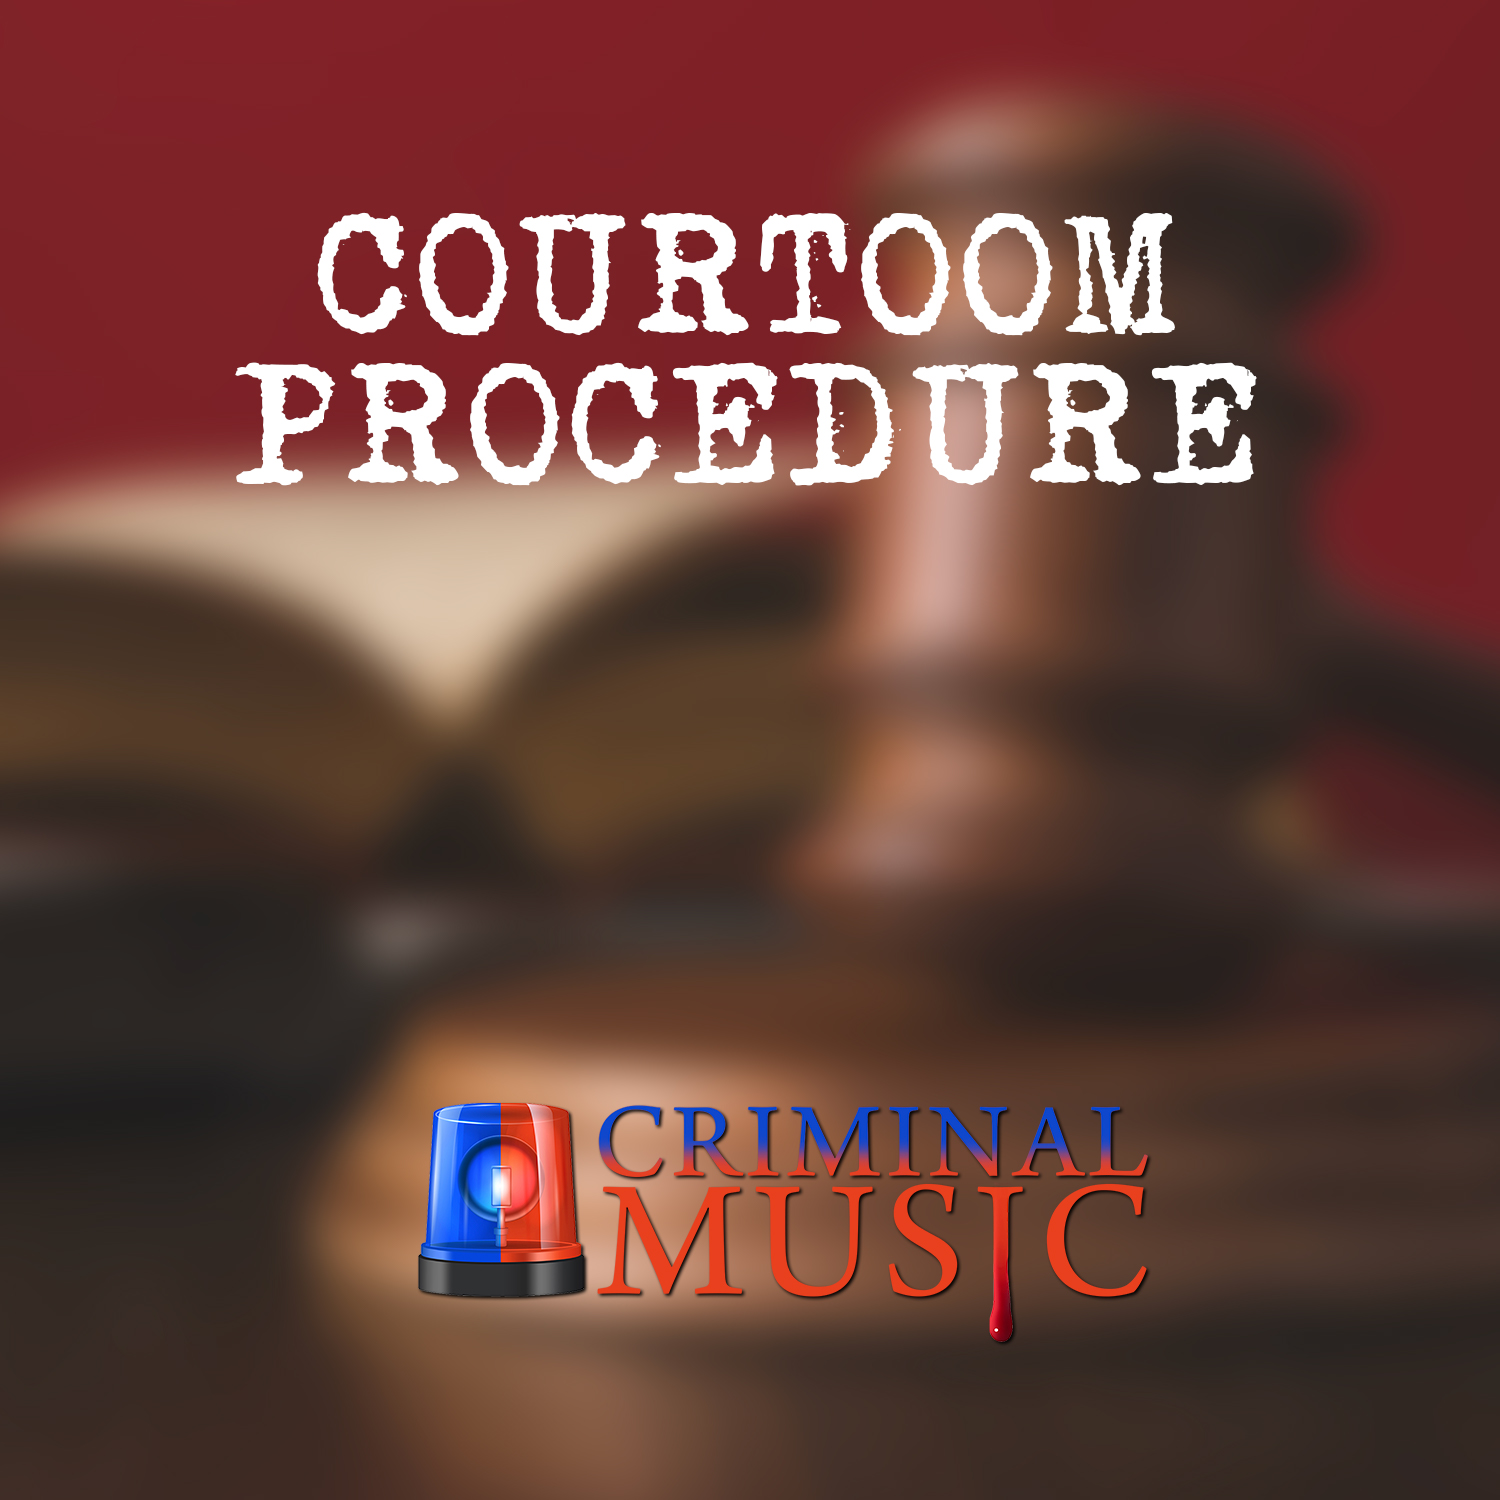 Courtroom Procedure